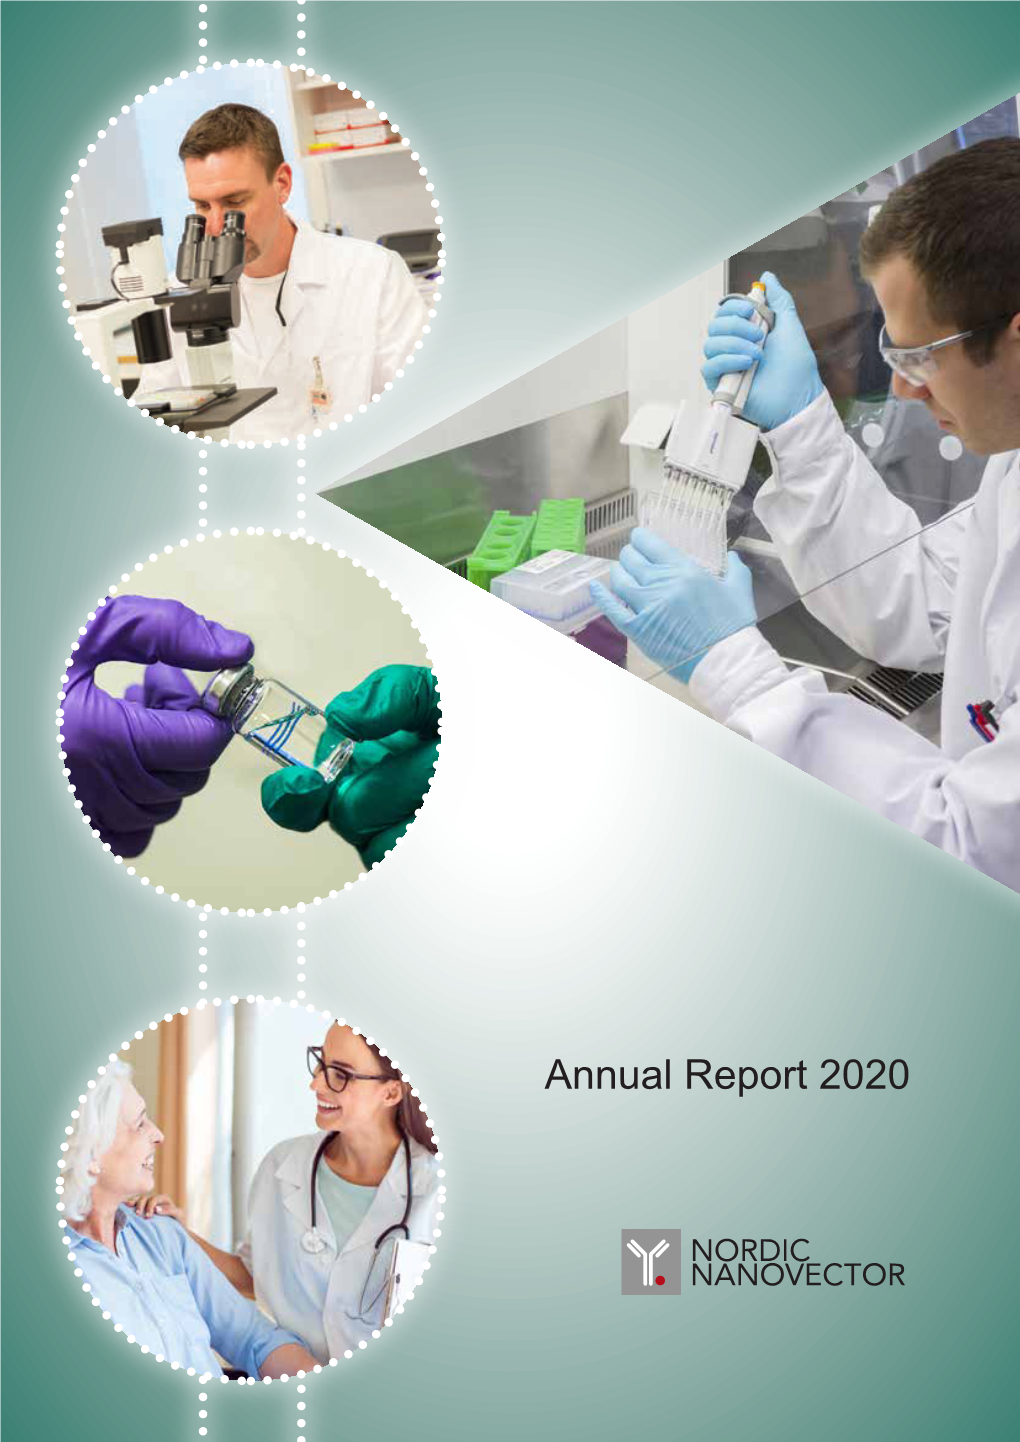 Annual Report 2020 ANNUAL REPORT 2020 L NORDIC NANOVECTOR 3